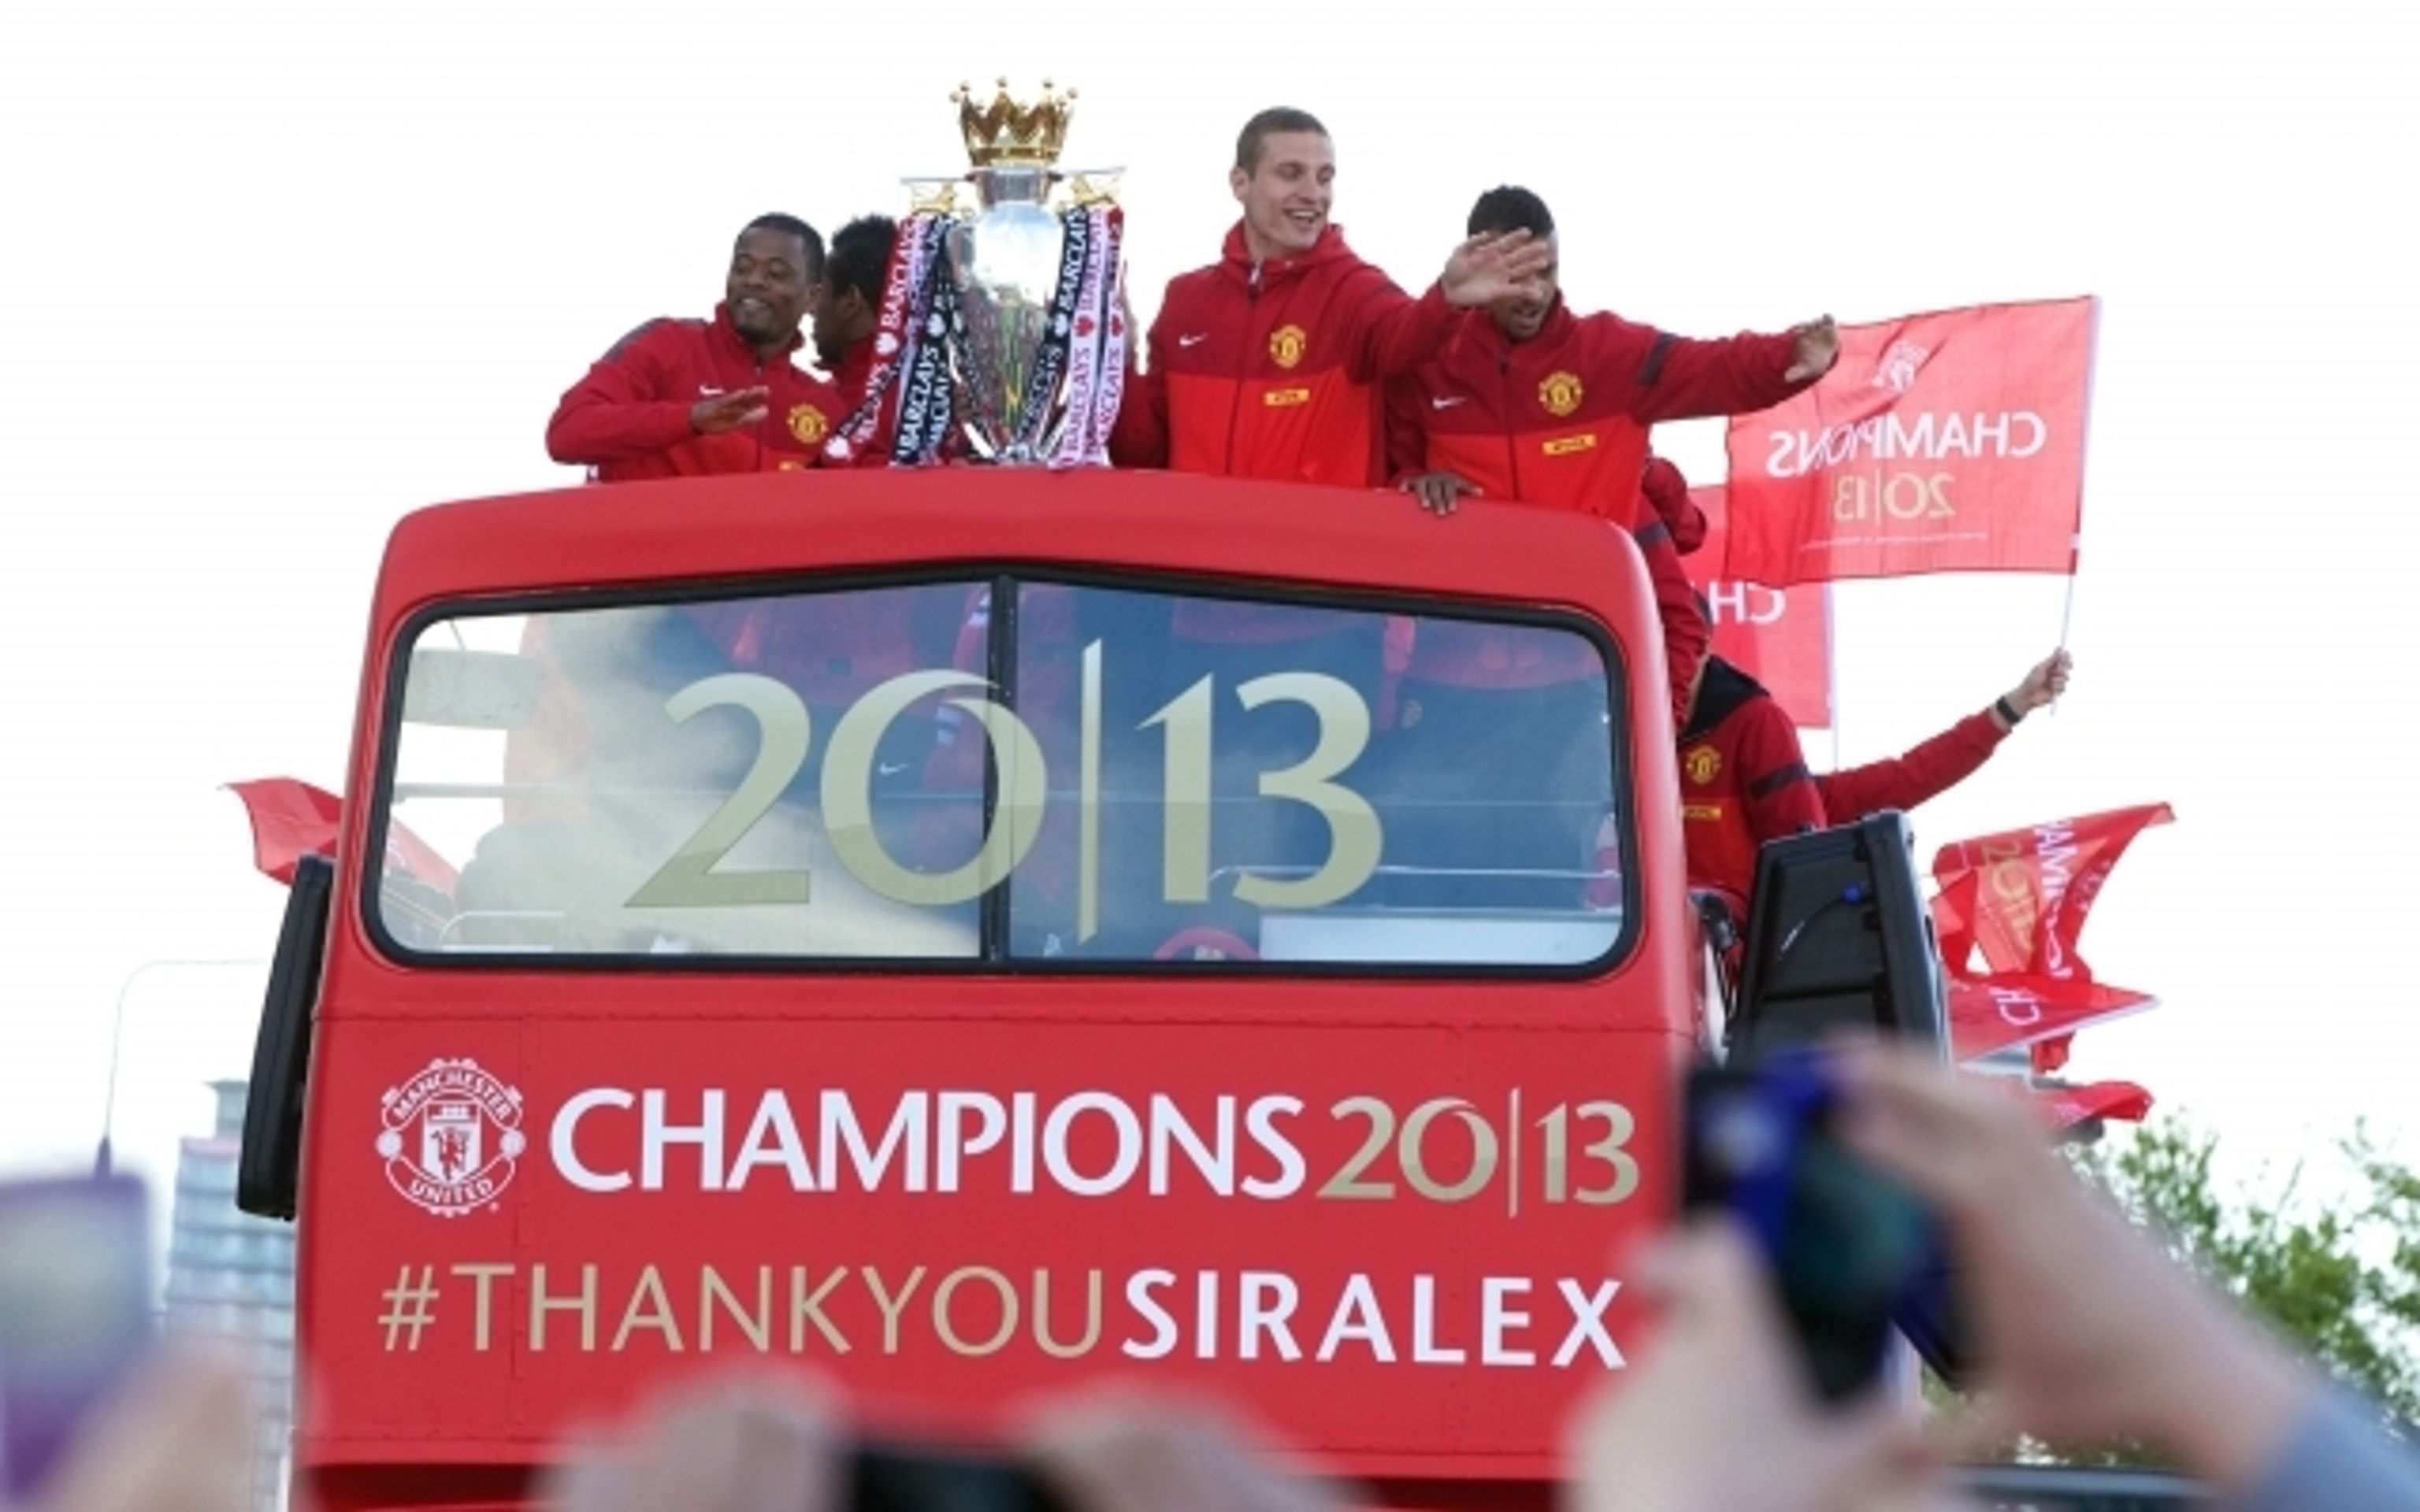 Oslavy v Manchesteru a loučení s Alexem Fergusonem - 22 - Oslavy v Manchesteru a loučení s Alexem Fergusonem (22/22)